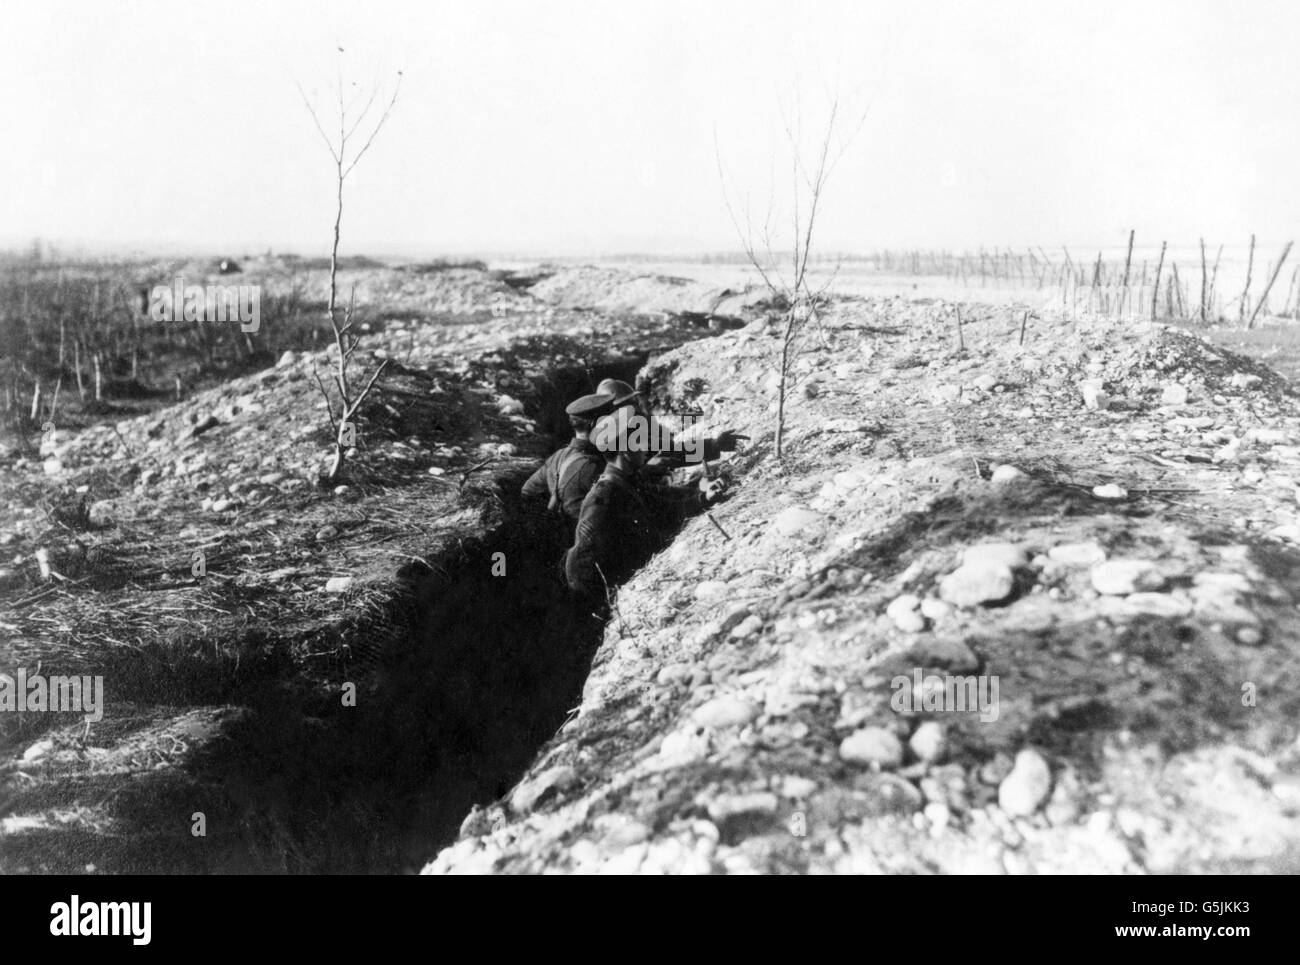 La Première Guerre mondiale - des soldats britanniques et italiens dans les tranchées - Piave - Italie Banque D'Images